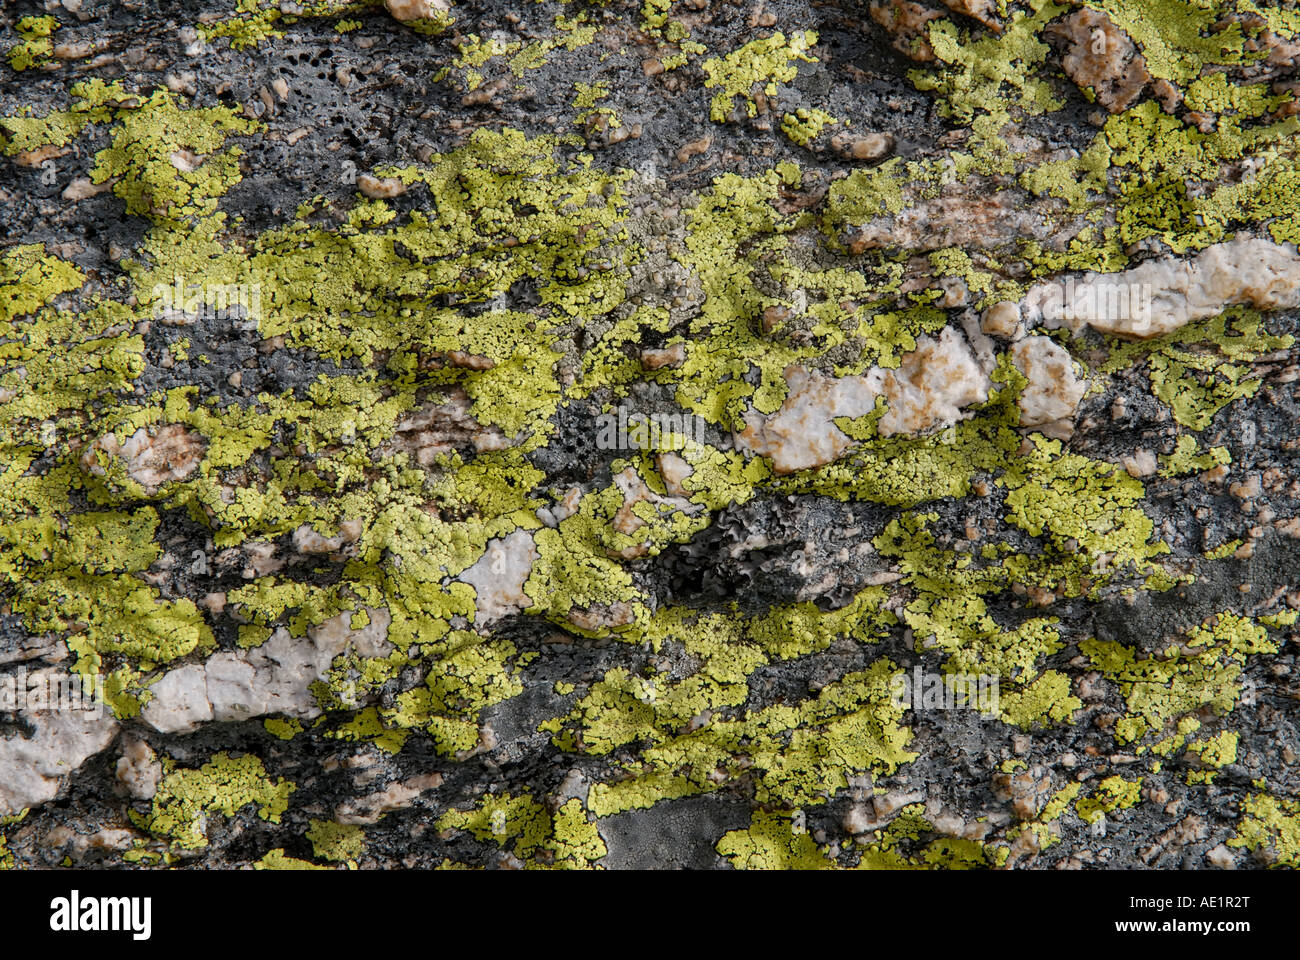 Crustose lichen Stock Photo